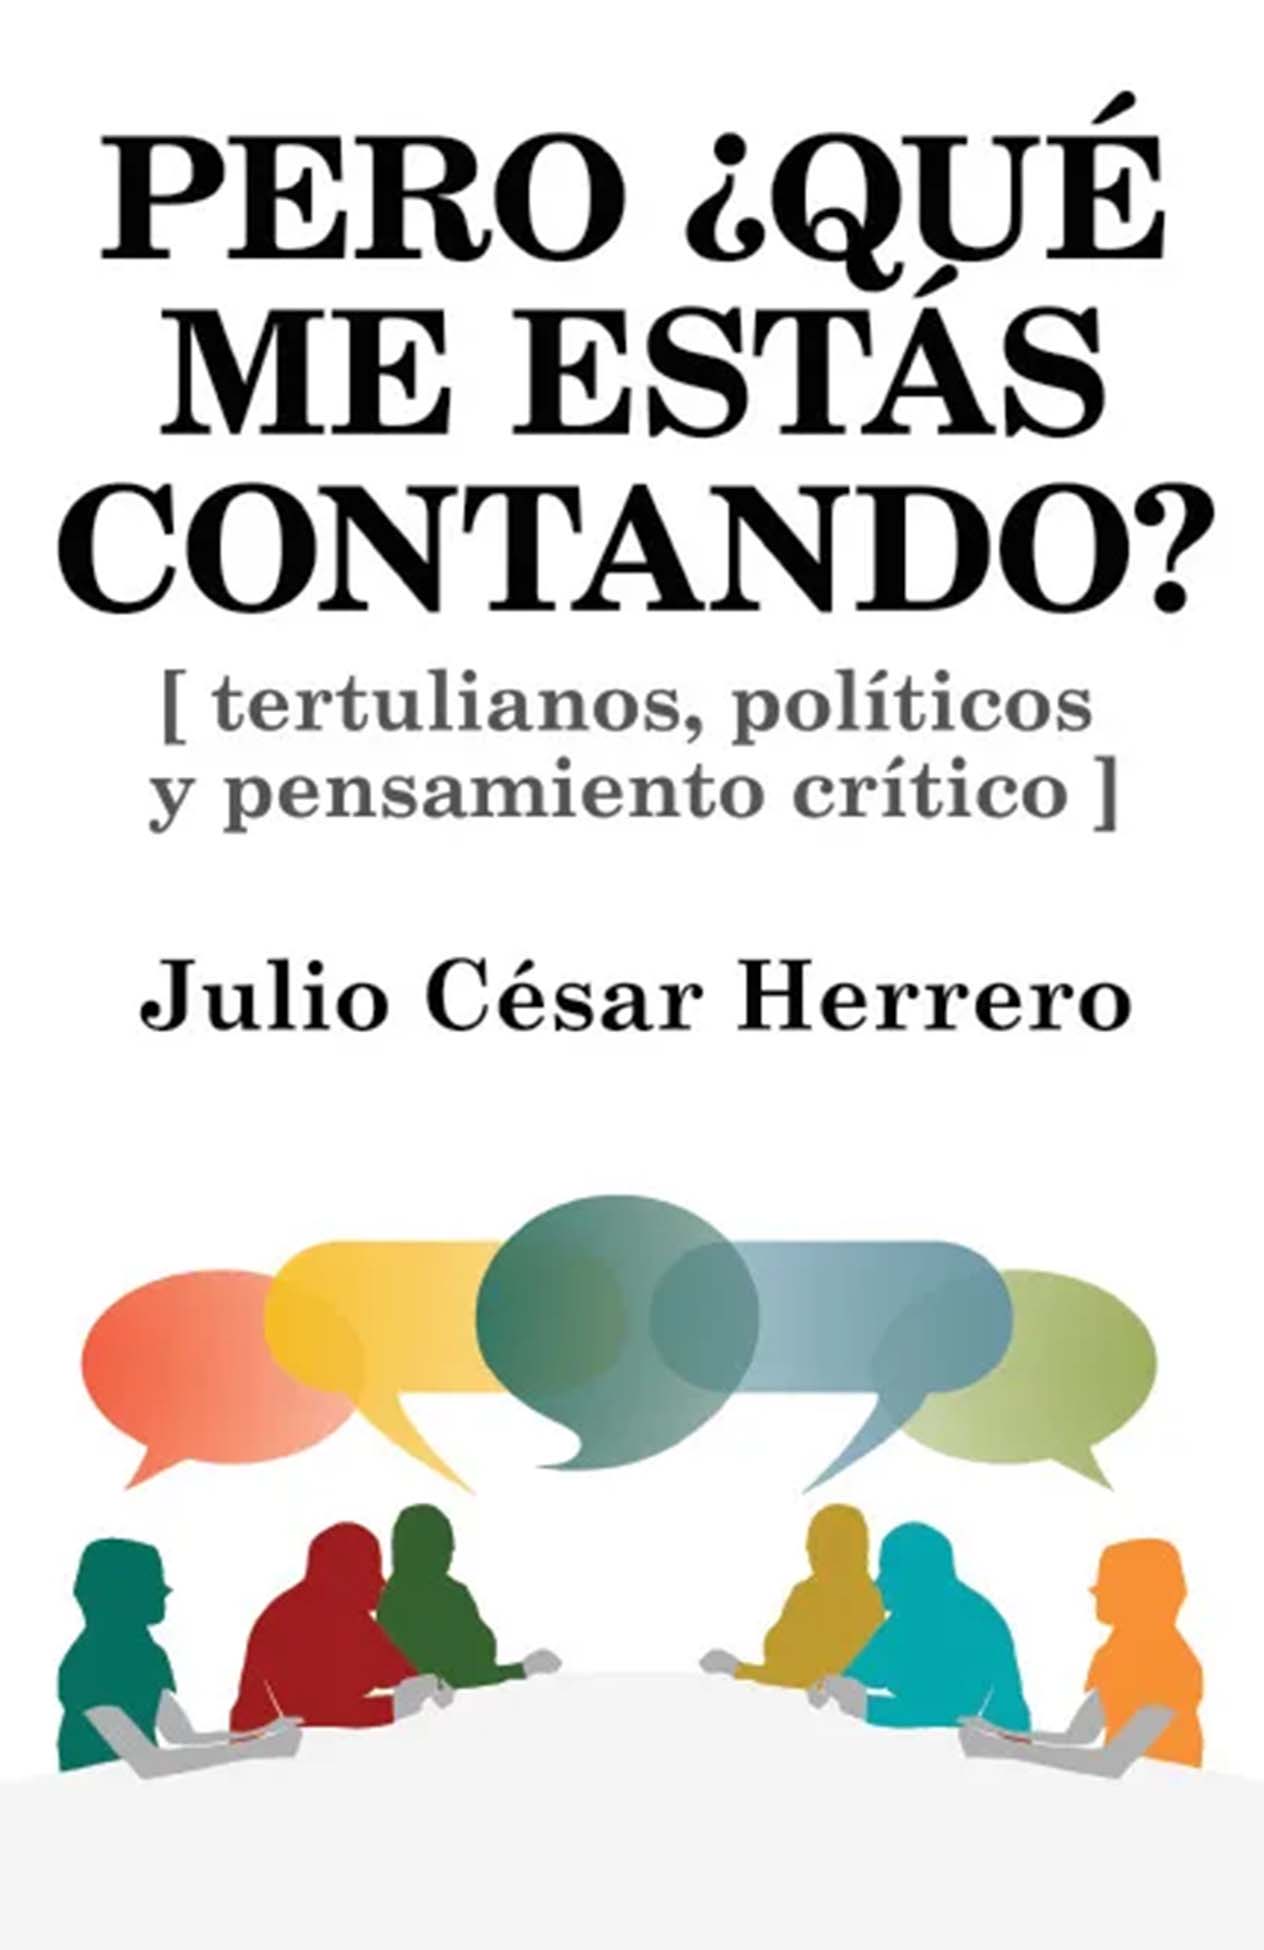 Portada del libro "Pero qué me estás contando" de Julio César Herrero